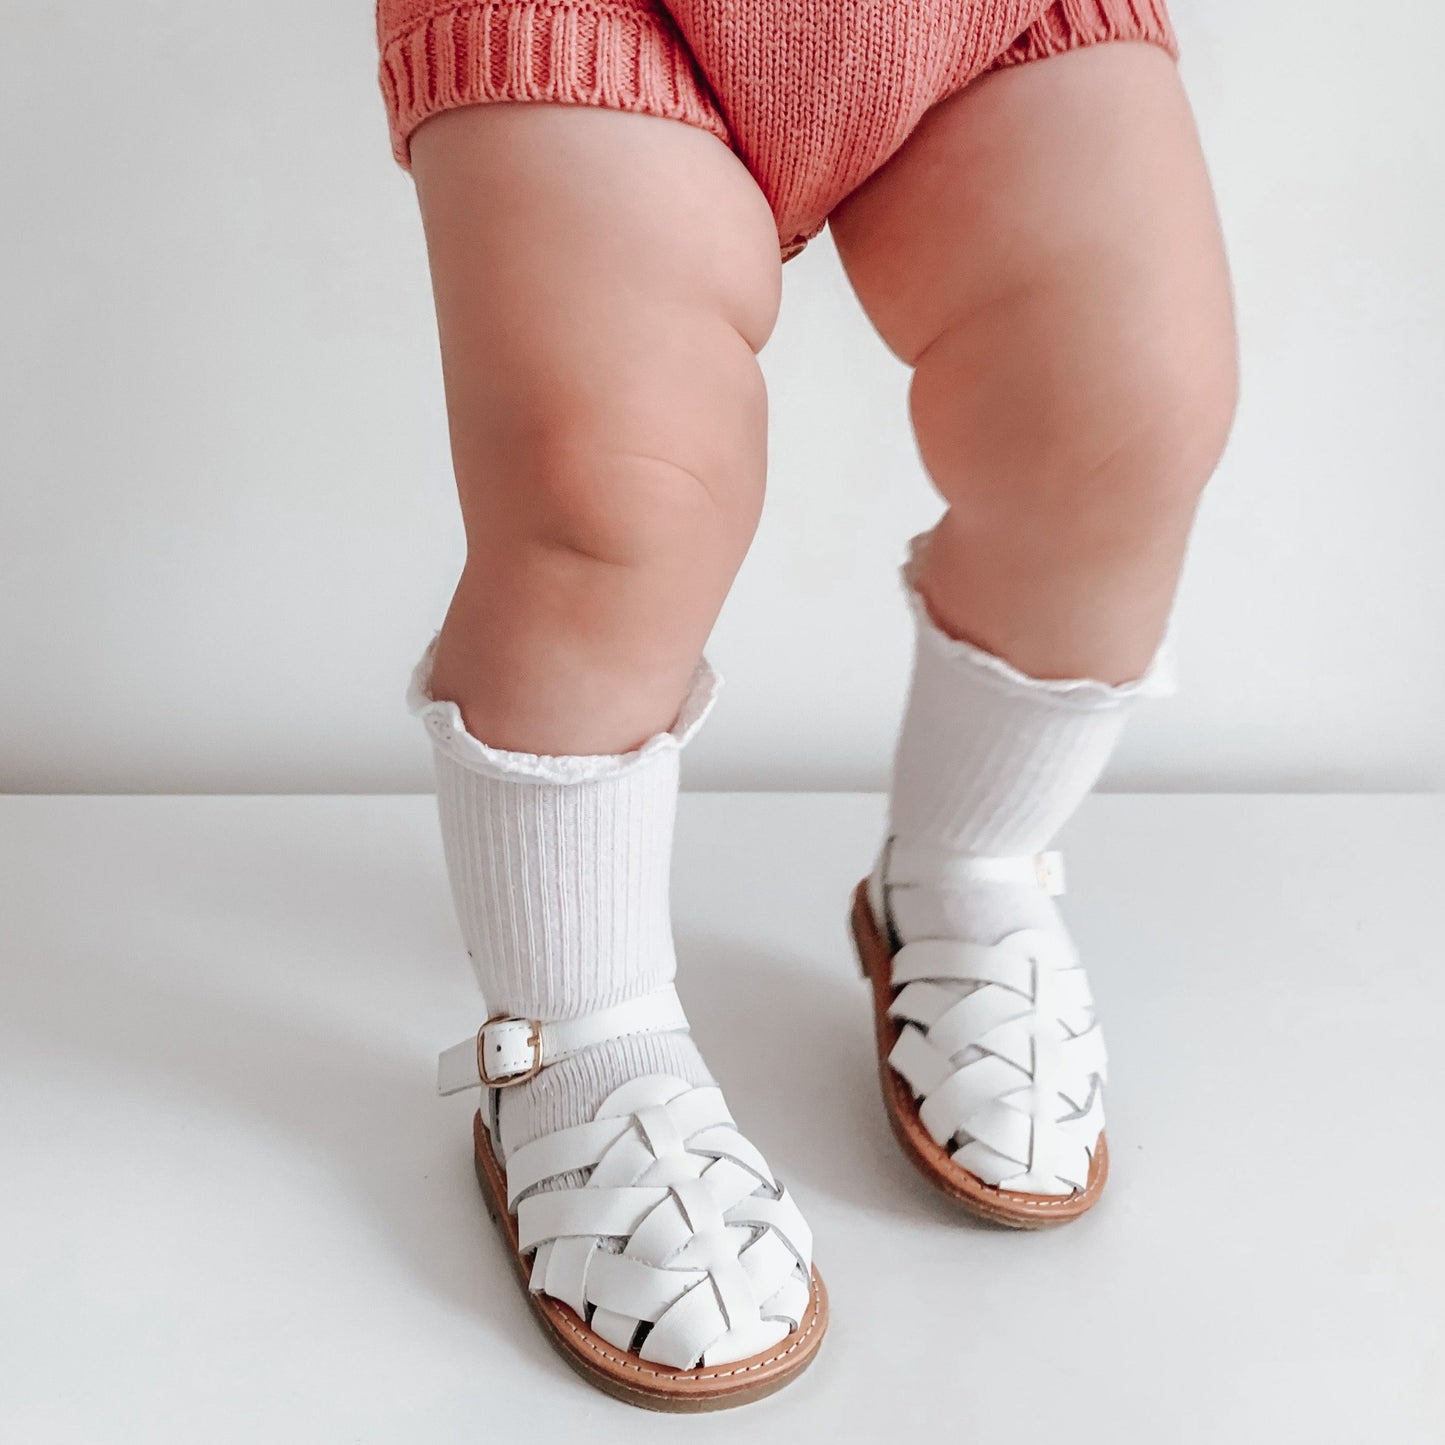 White sandal toddler